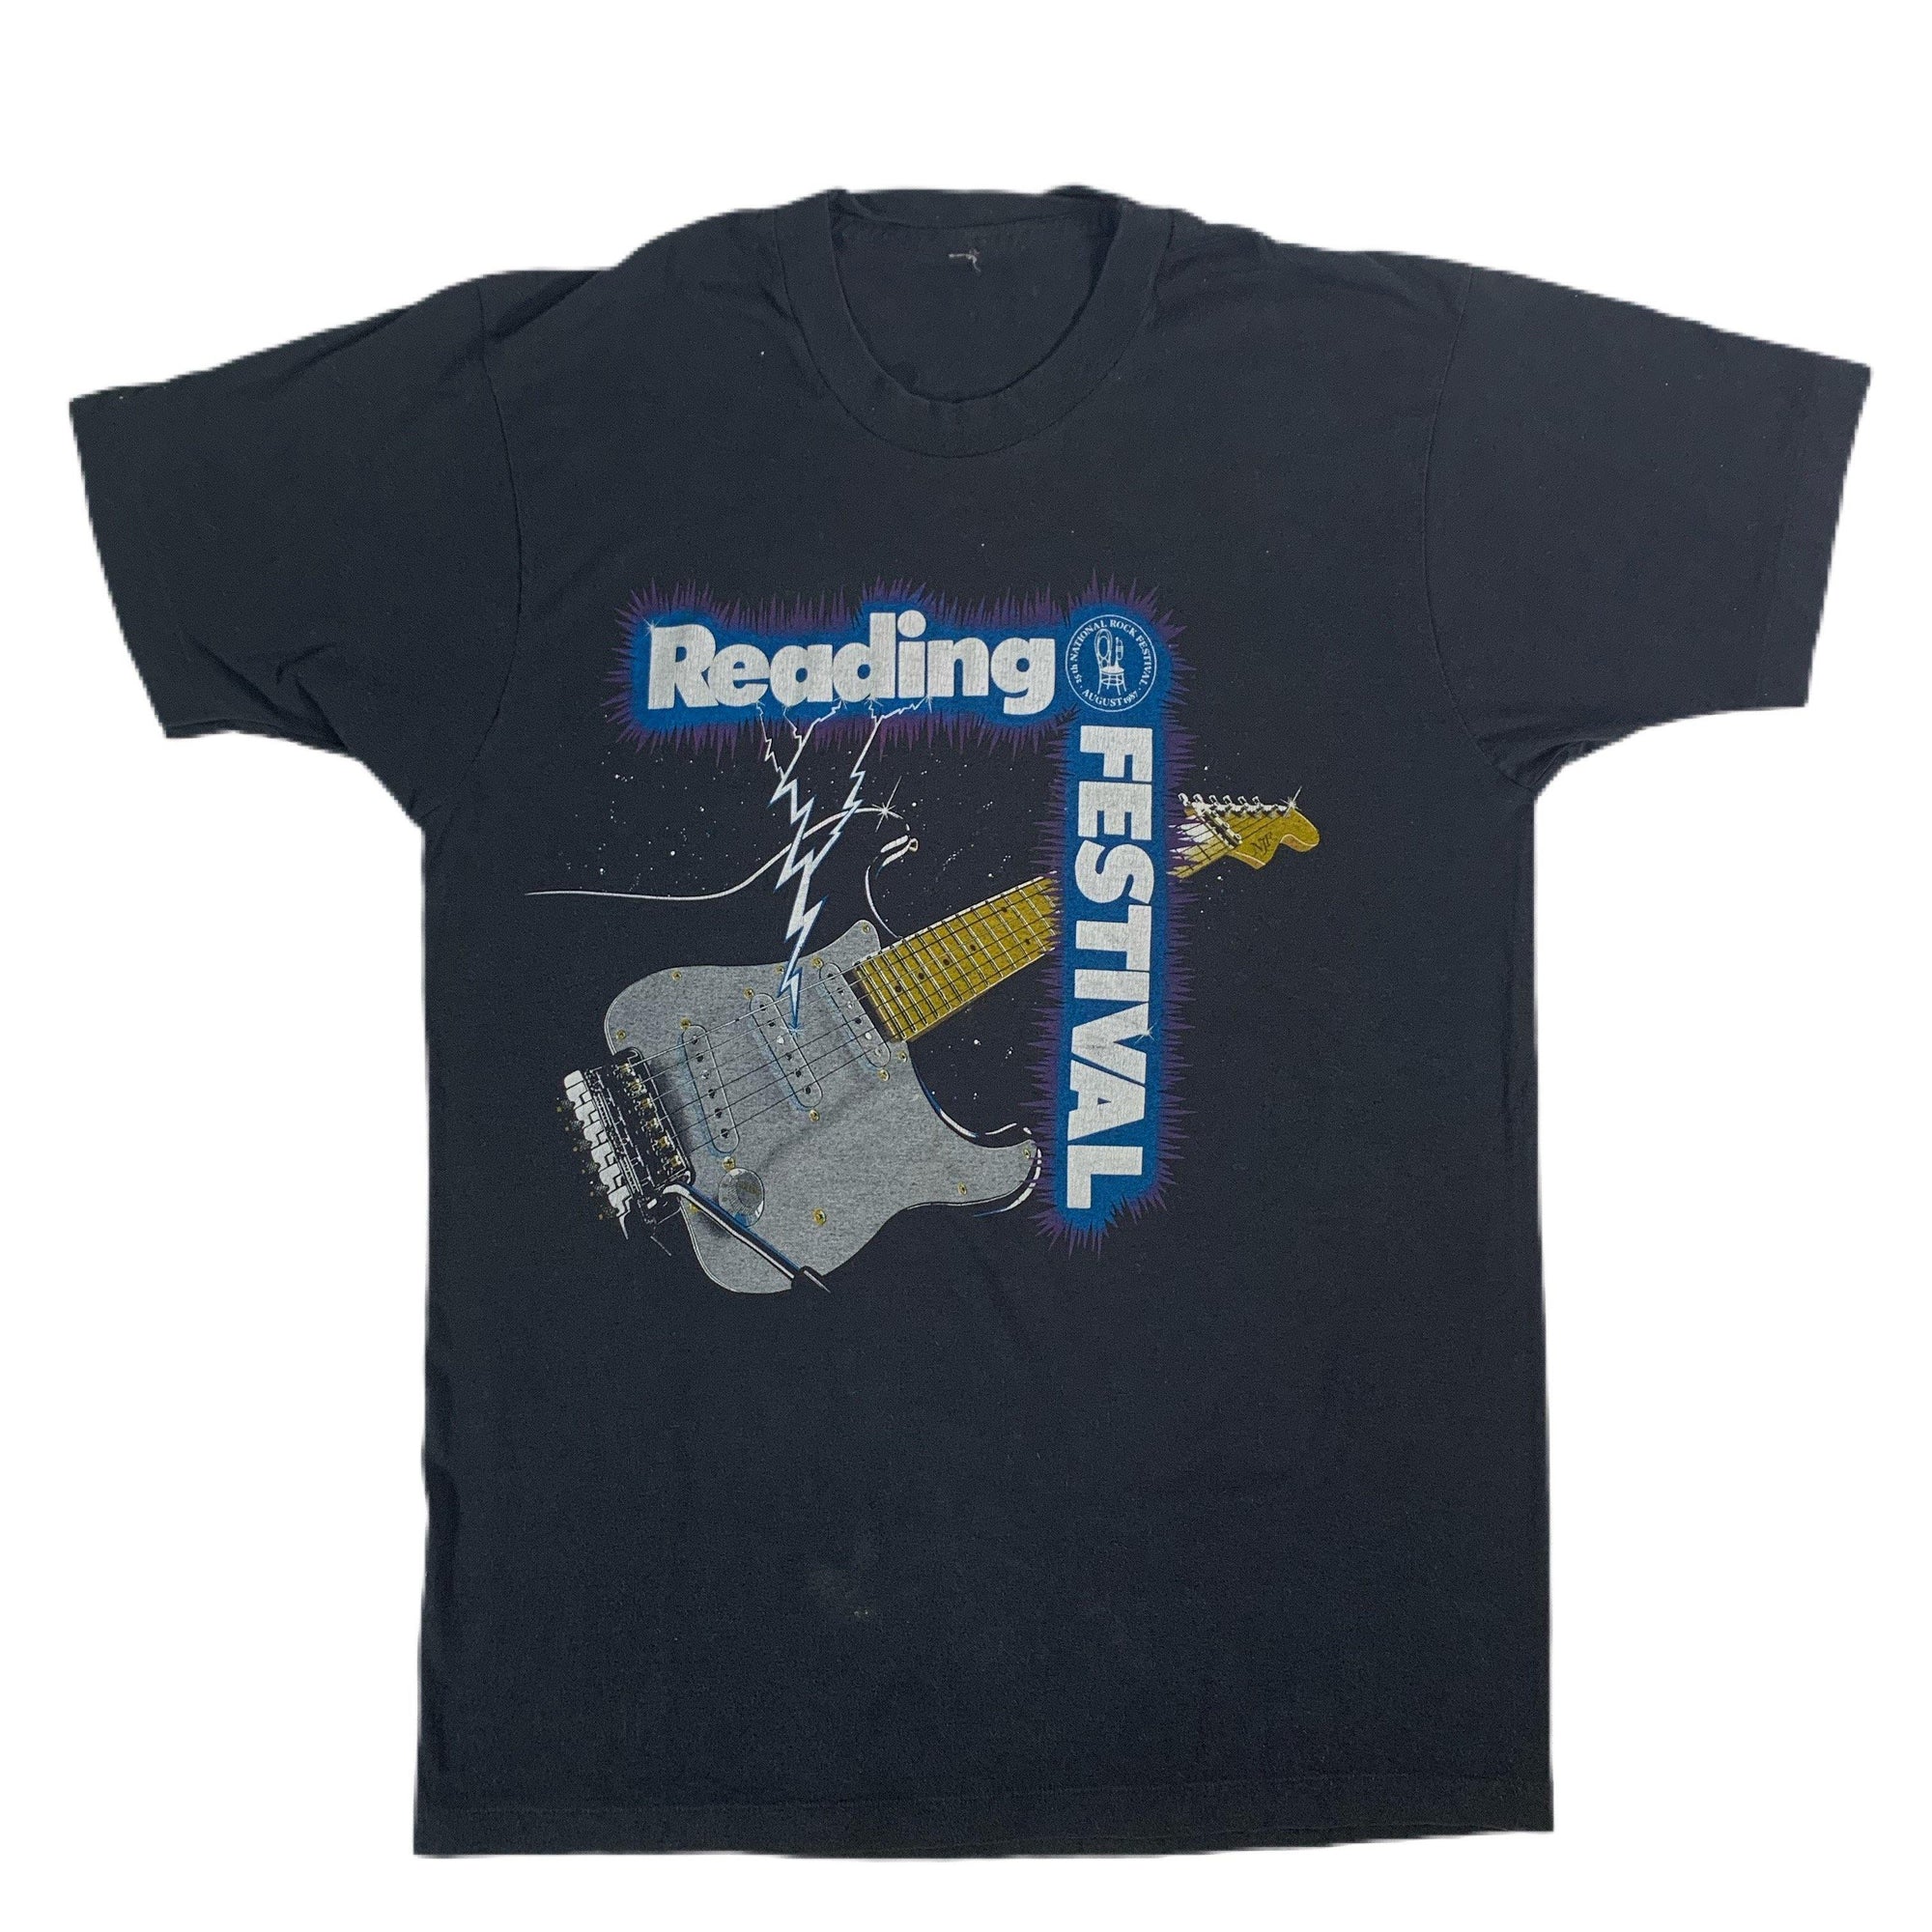 Vintage Reading Festival "1987" T-Shirt - jointcustodydc